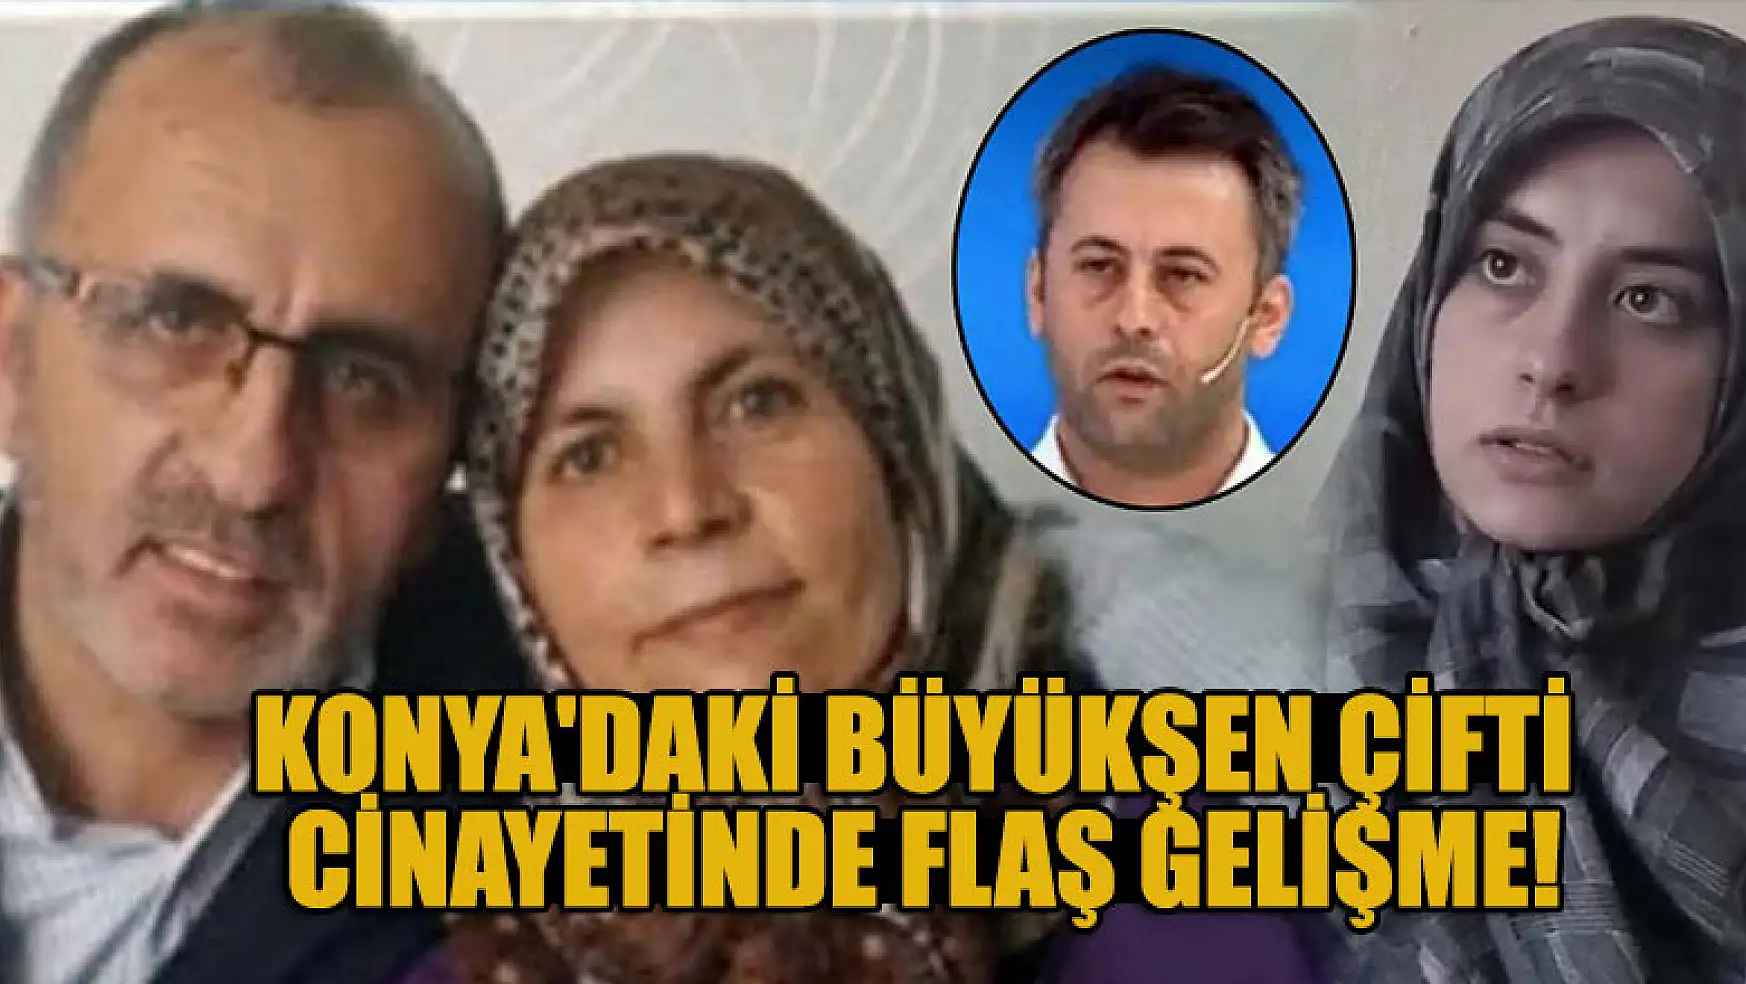 Konya'daki Büyükşen çifti cinayetine ilişkin 7 kişi serbest bırakıldı